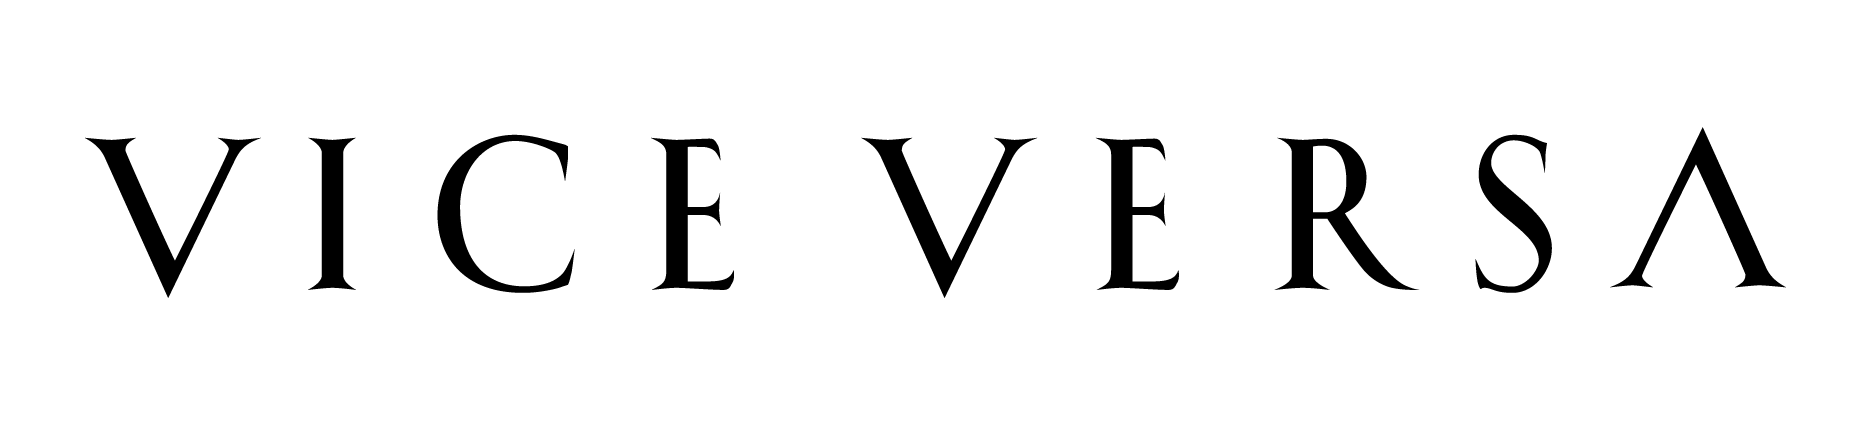 VV-logo-1 (1).png